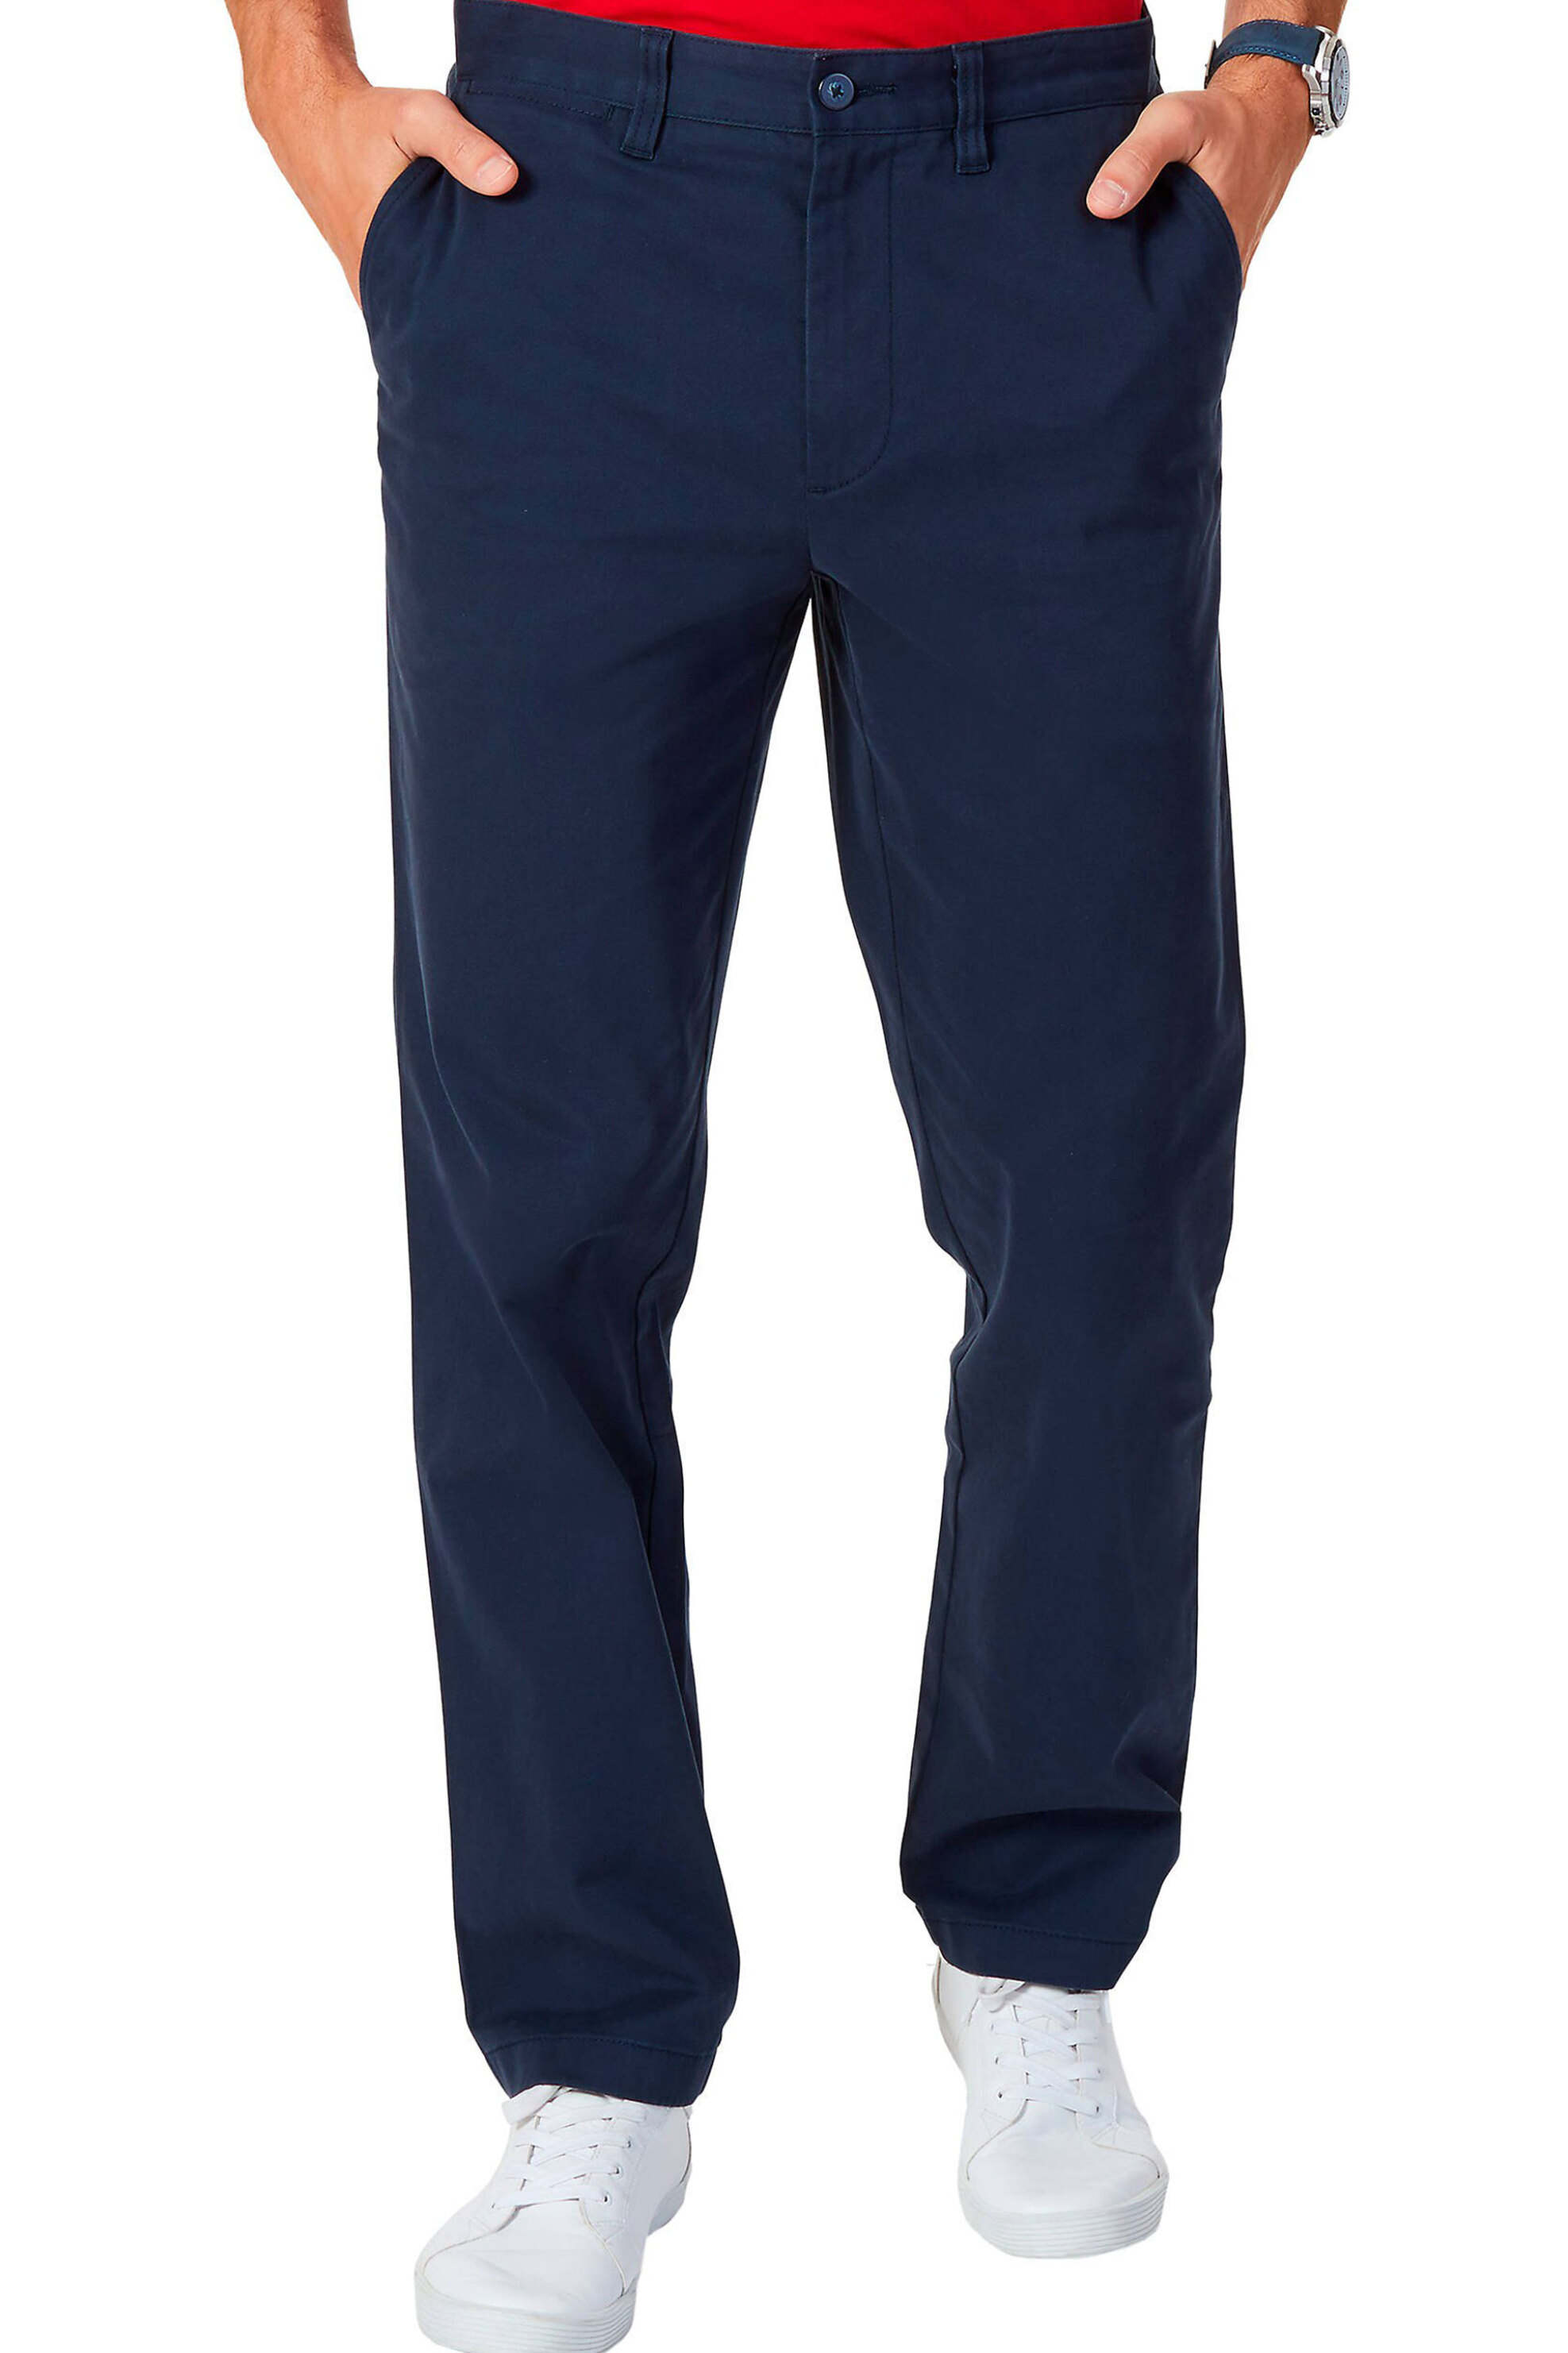 Ανδρική Μόδα > Ανδρικά Ρούχα > Ανδρικά Παντελόνια > Ανδρικά Παντελόνια Chinos Nautica ανδρικό chino παντελόνι μονόχρωμο - P81106 Μπλε Σκούρο